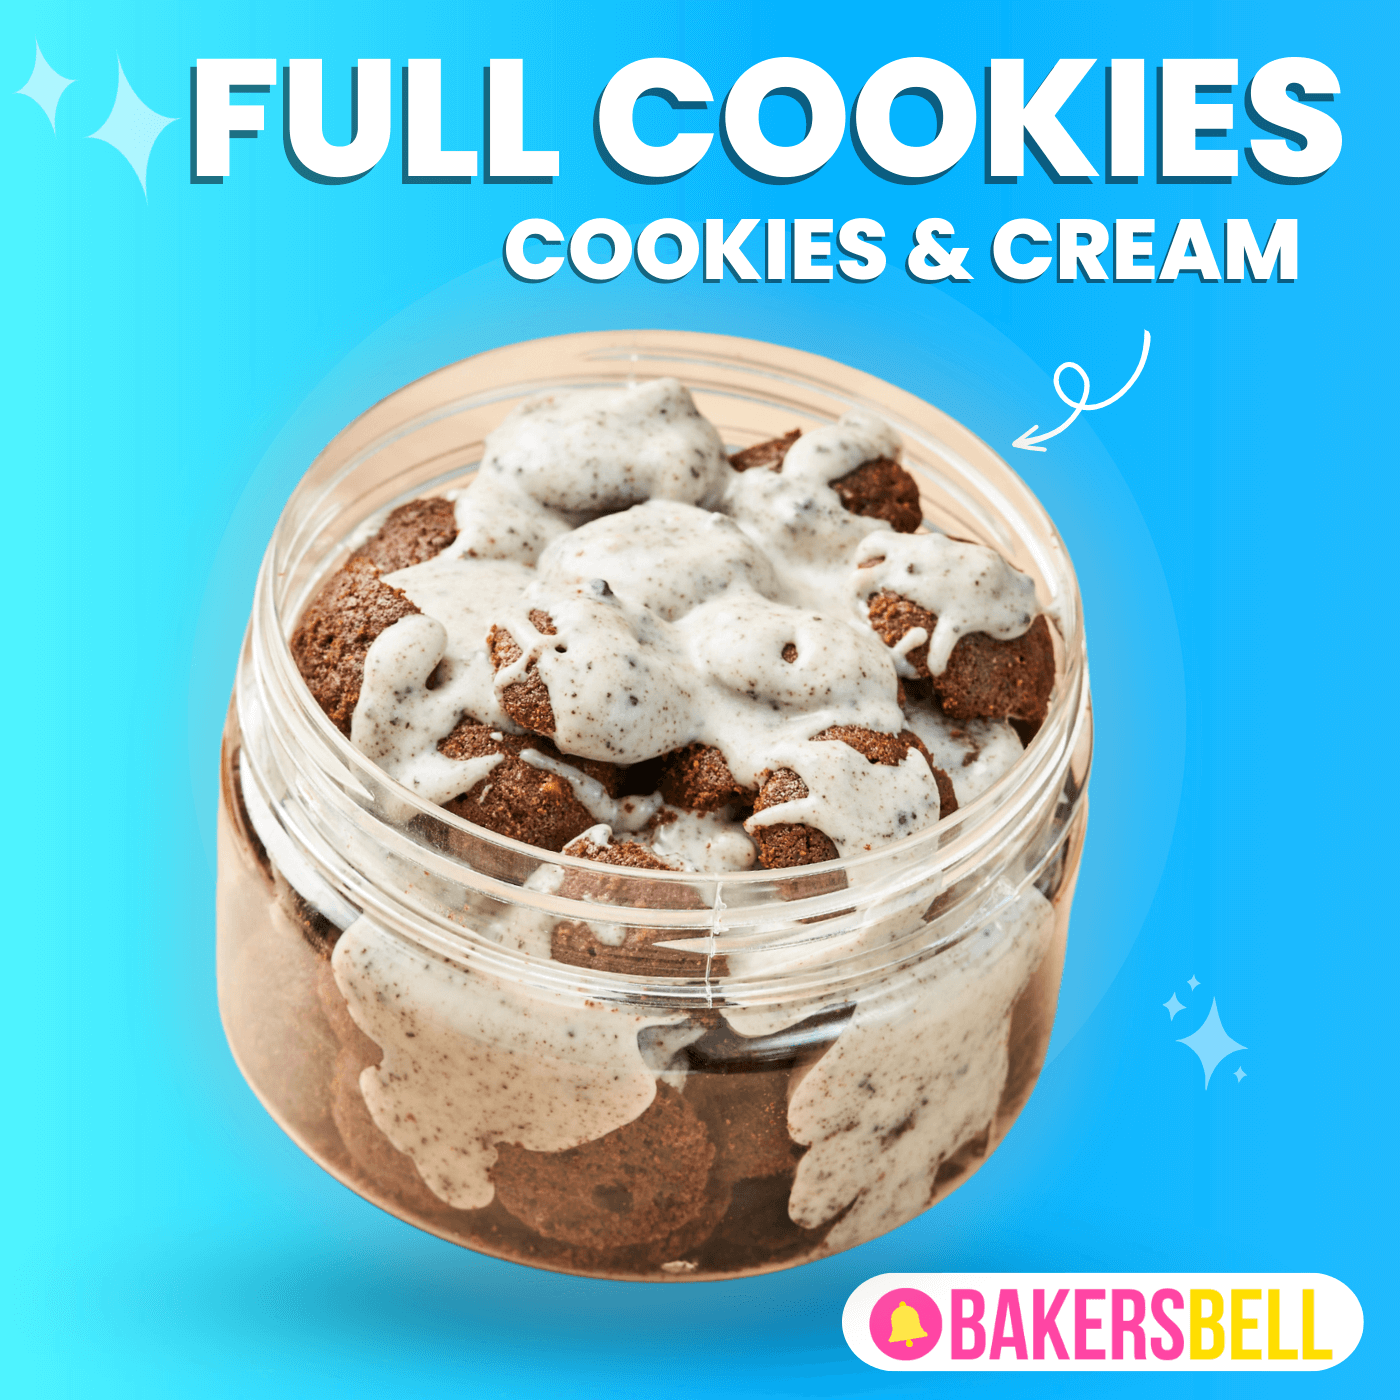 ChocBox Full Cookies - COOKIES & CREAM